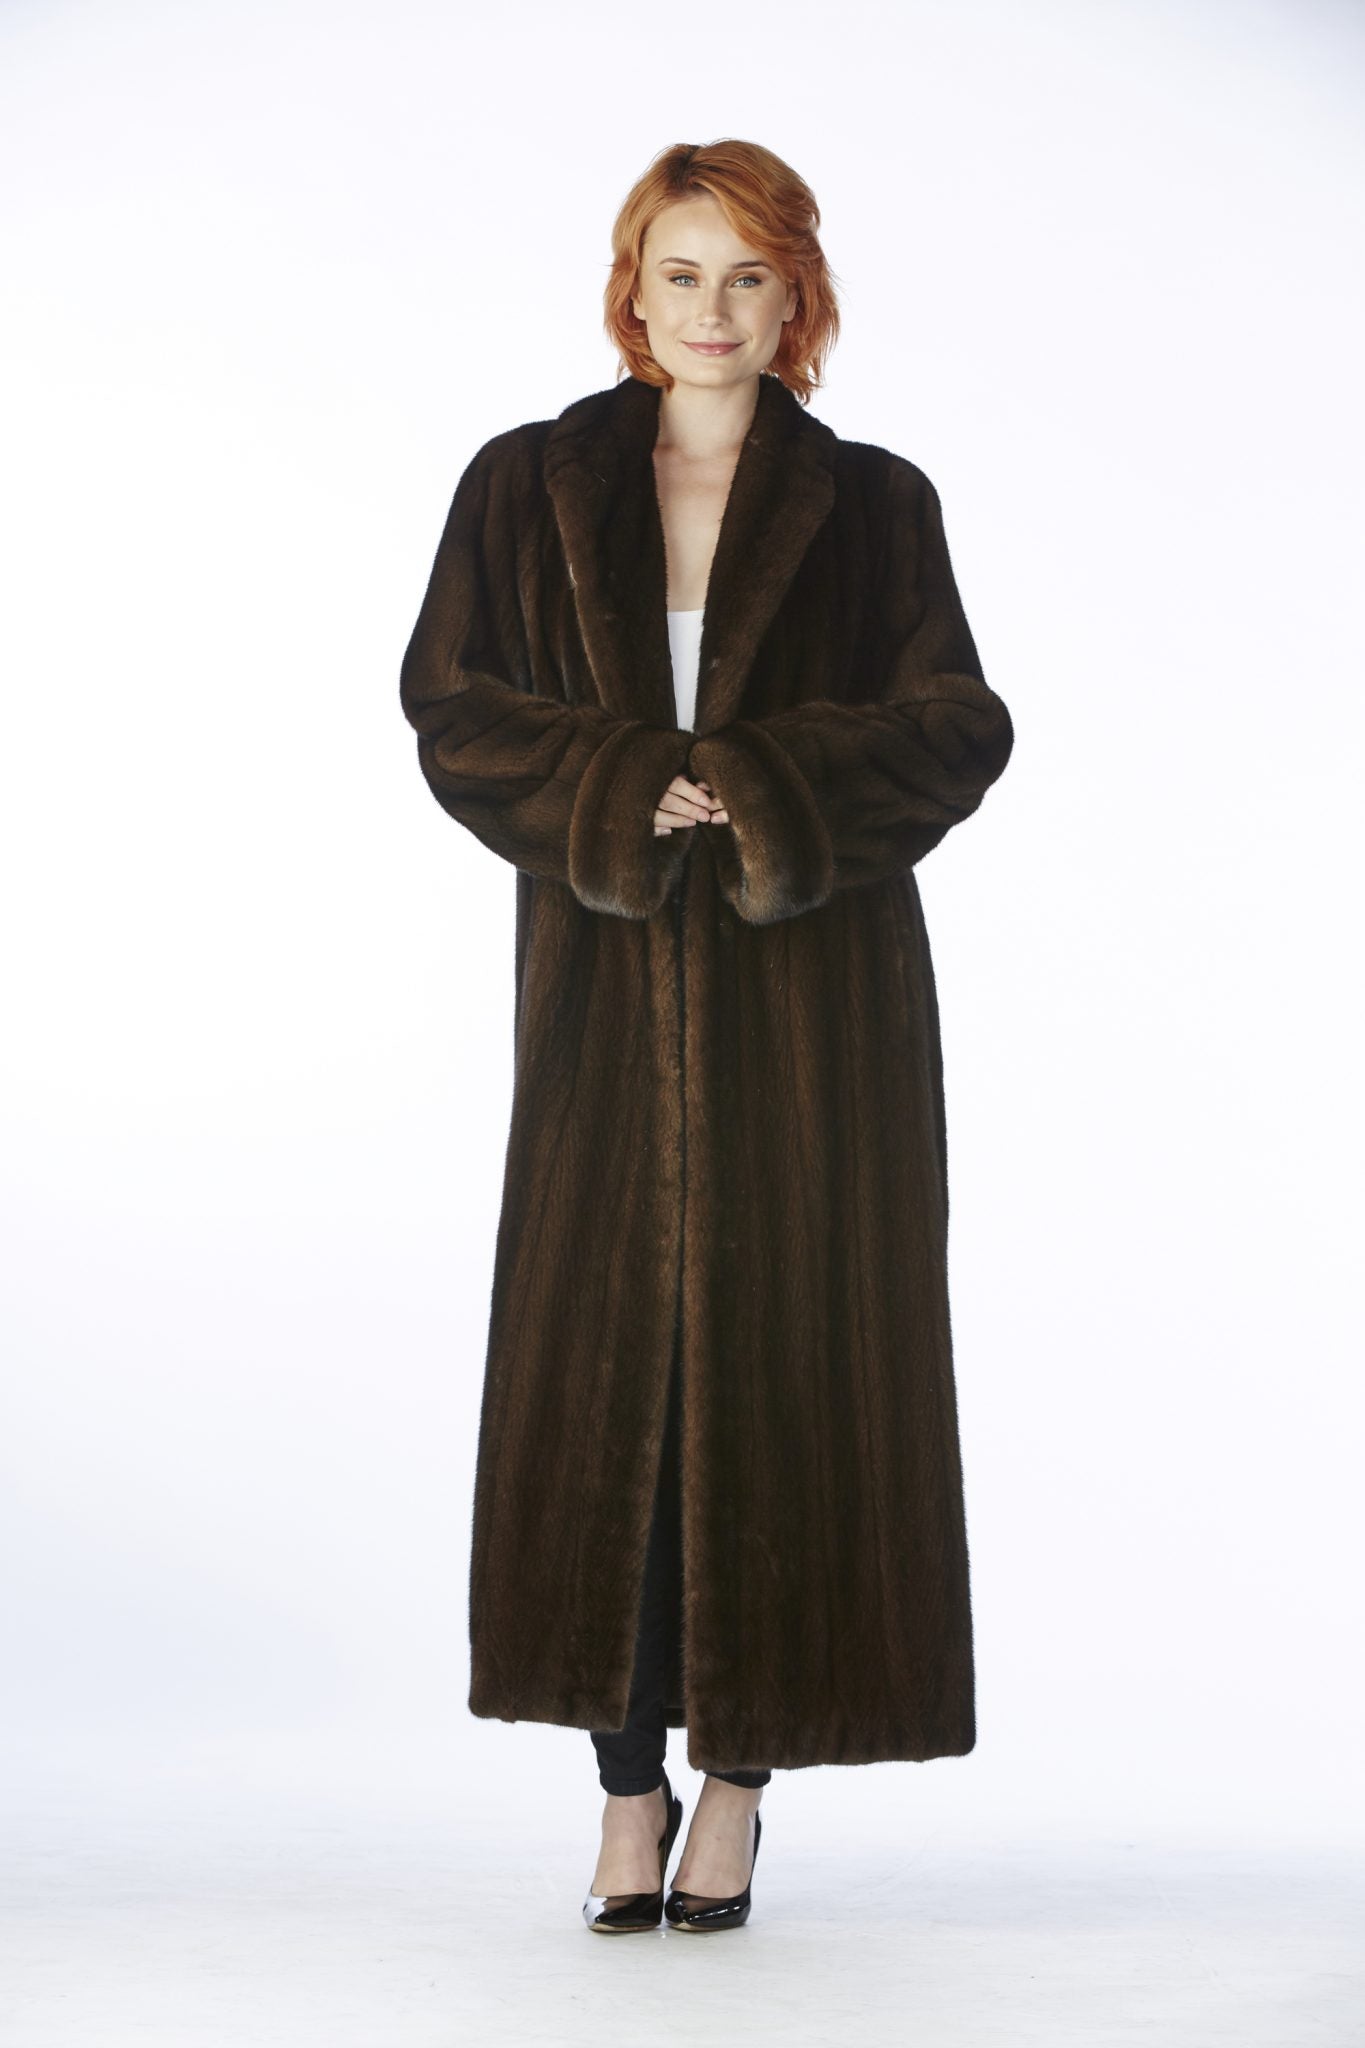 women wearing a full length mink coat